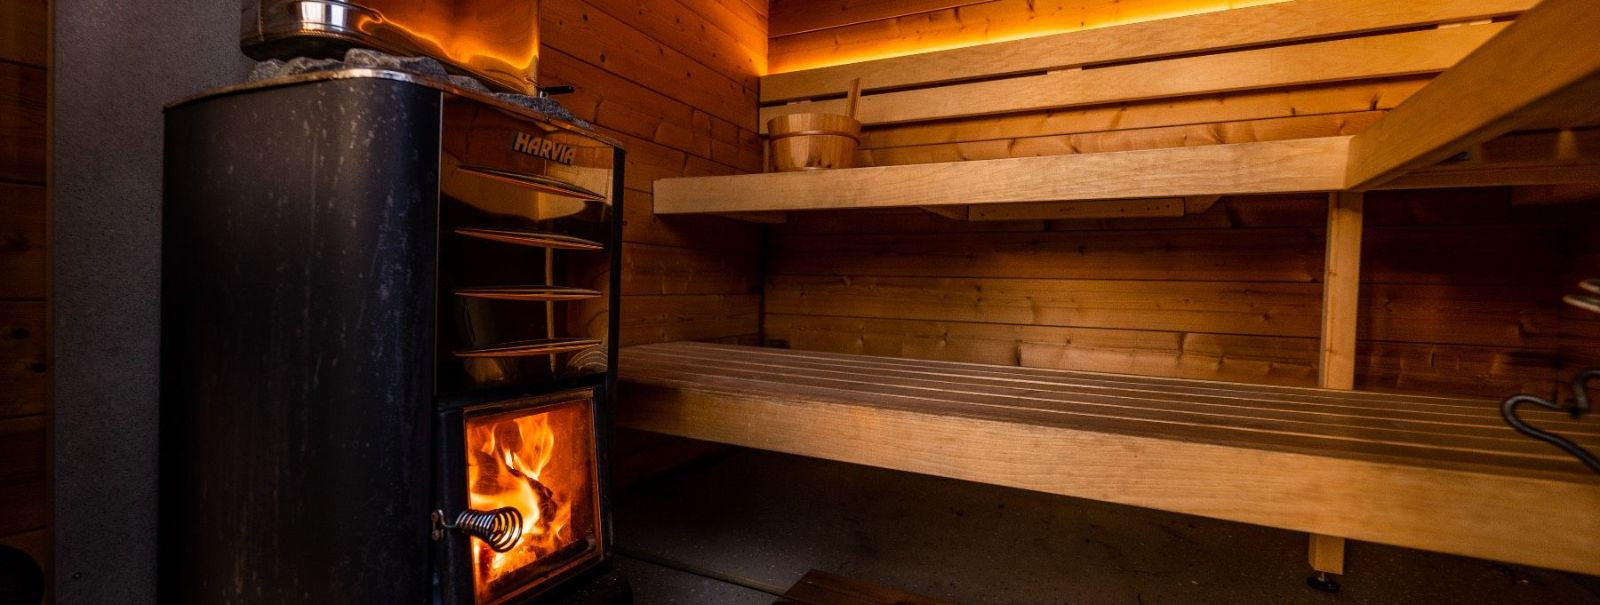 Eesti saun on rohkem kui lihtsalt ruum soojade keriste ja auru jaoks; see on koht, kus kohtuvad traditsioonid, tervis ja ühendus kogukonnaga. Saun on olnud Eest